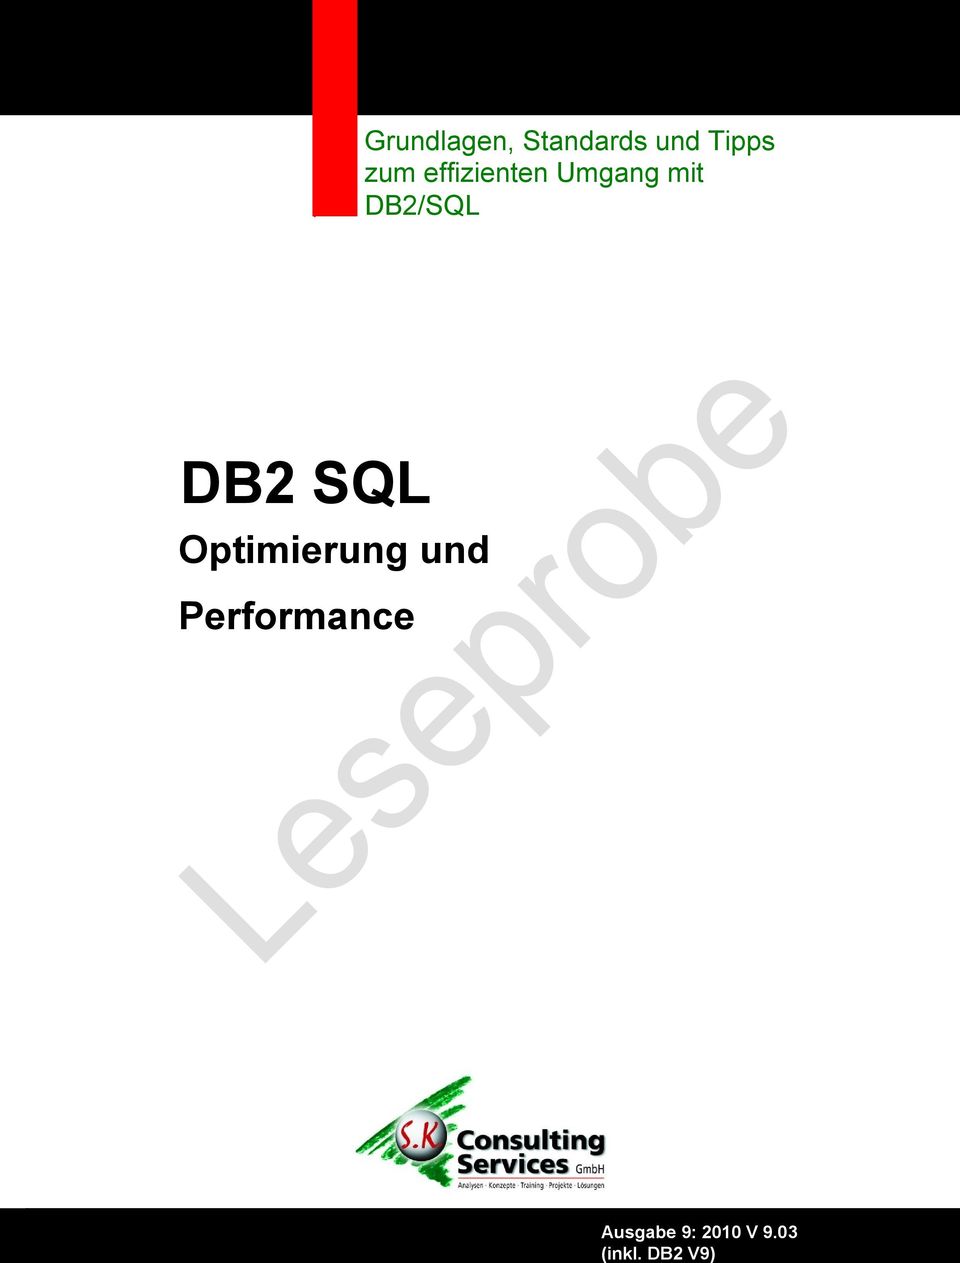 Optimierung und Performance Ausgabe 9: 2010 V 9.03 S.K.